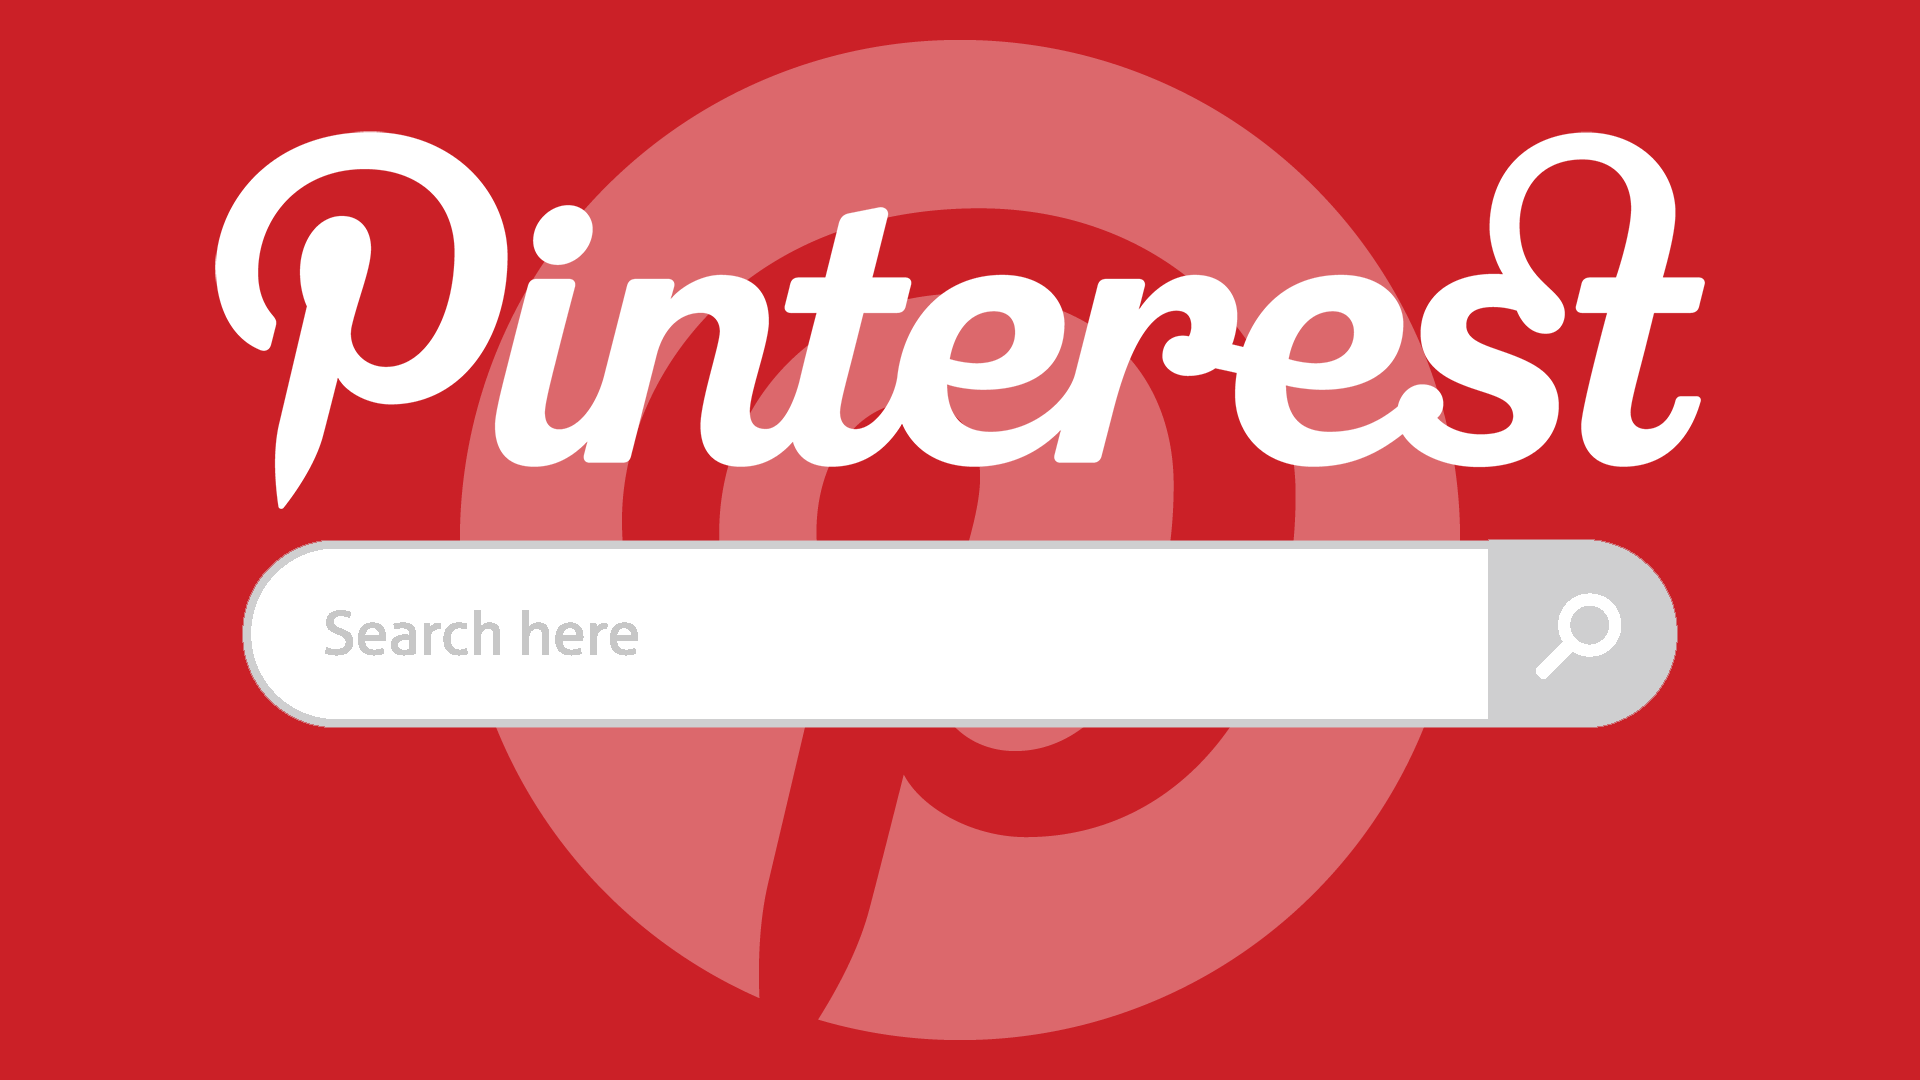 5 dicas para usar bem o Pinterest para o seu negócio - 8 Milímetros